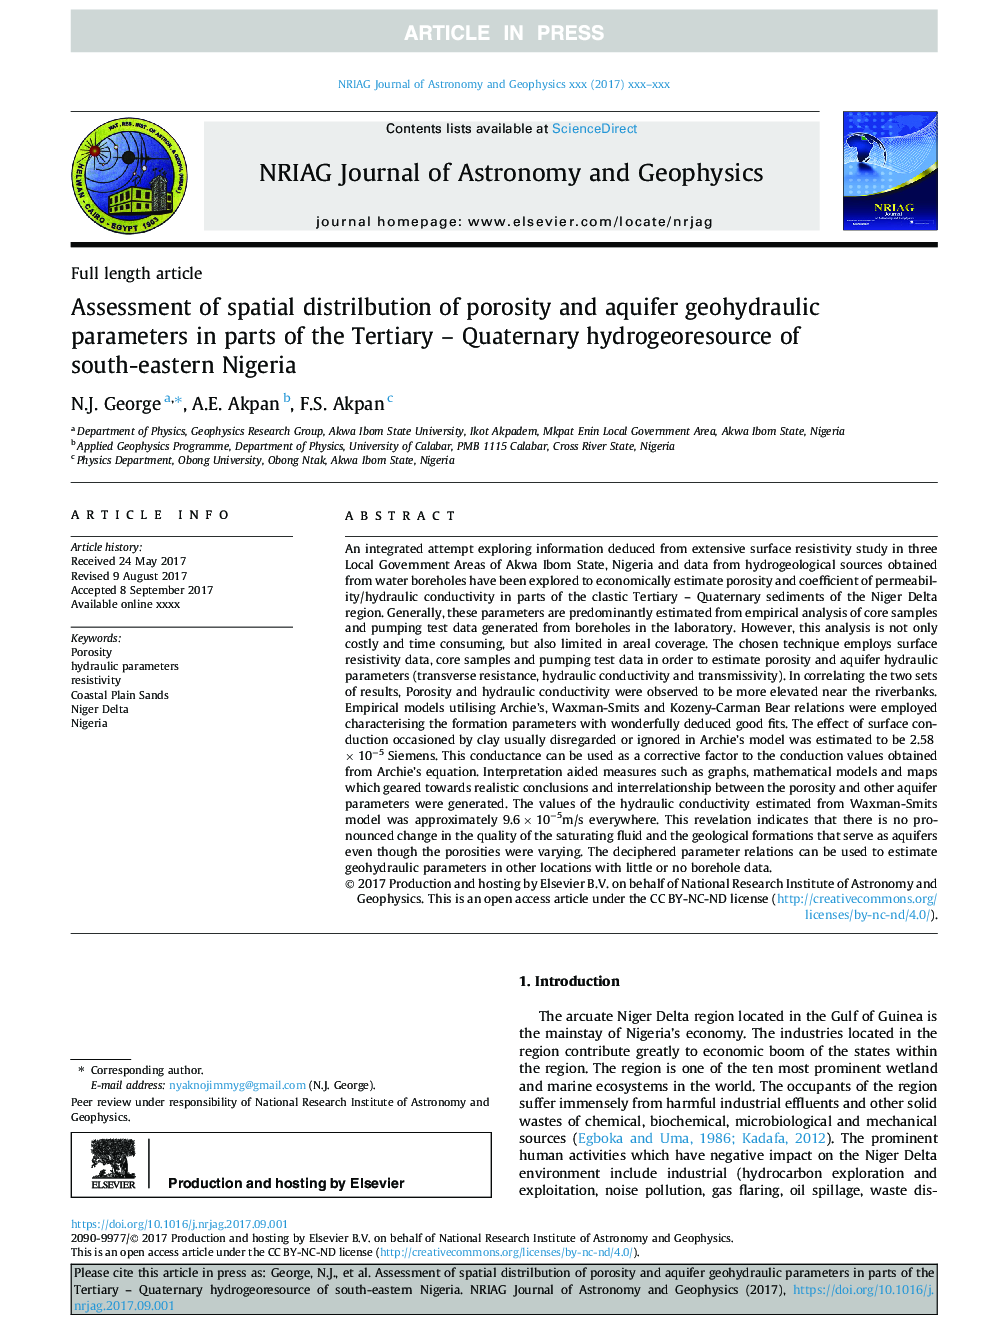 ارزیابی توزیع فضایی تخلخل و پارامترهای ژئوشیمیایی آبخانهای در بخشهای منابع آبرسانی ترتیاری - کواترنری جنوب شرقی نیجریه 